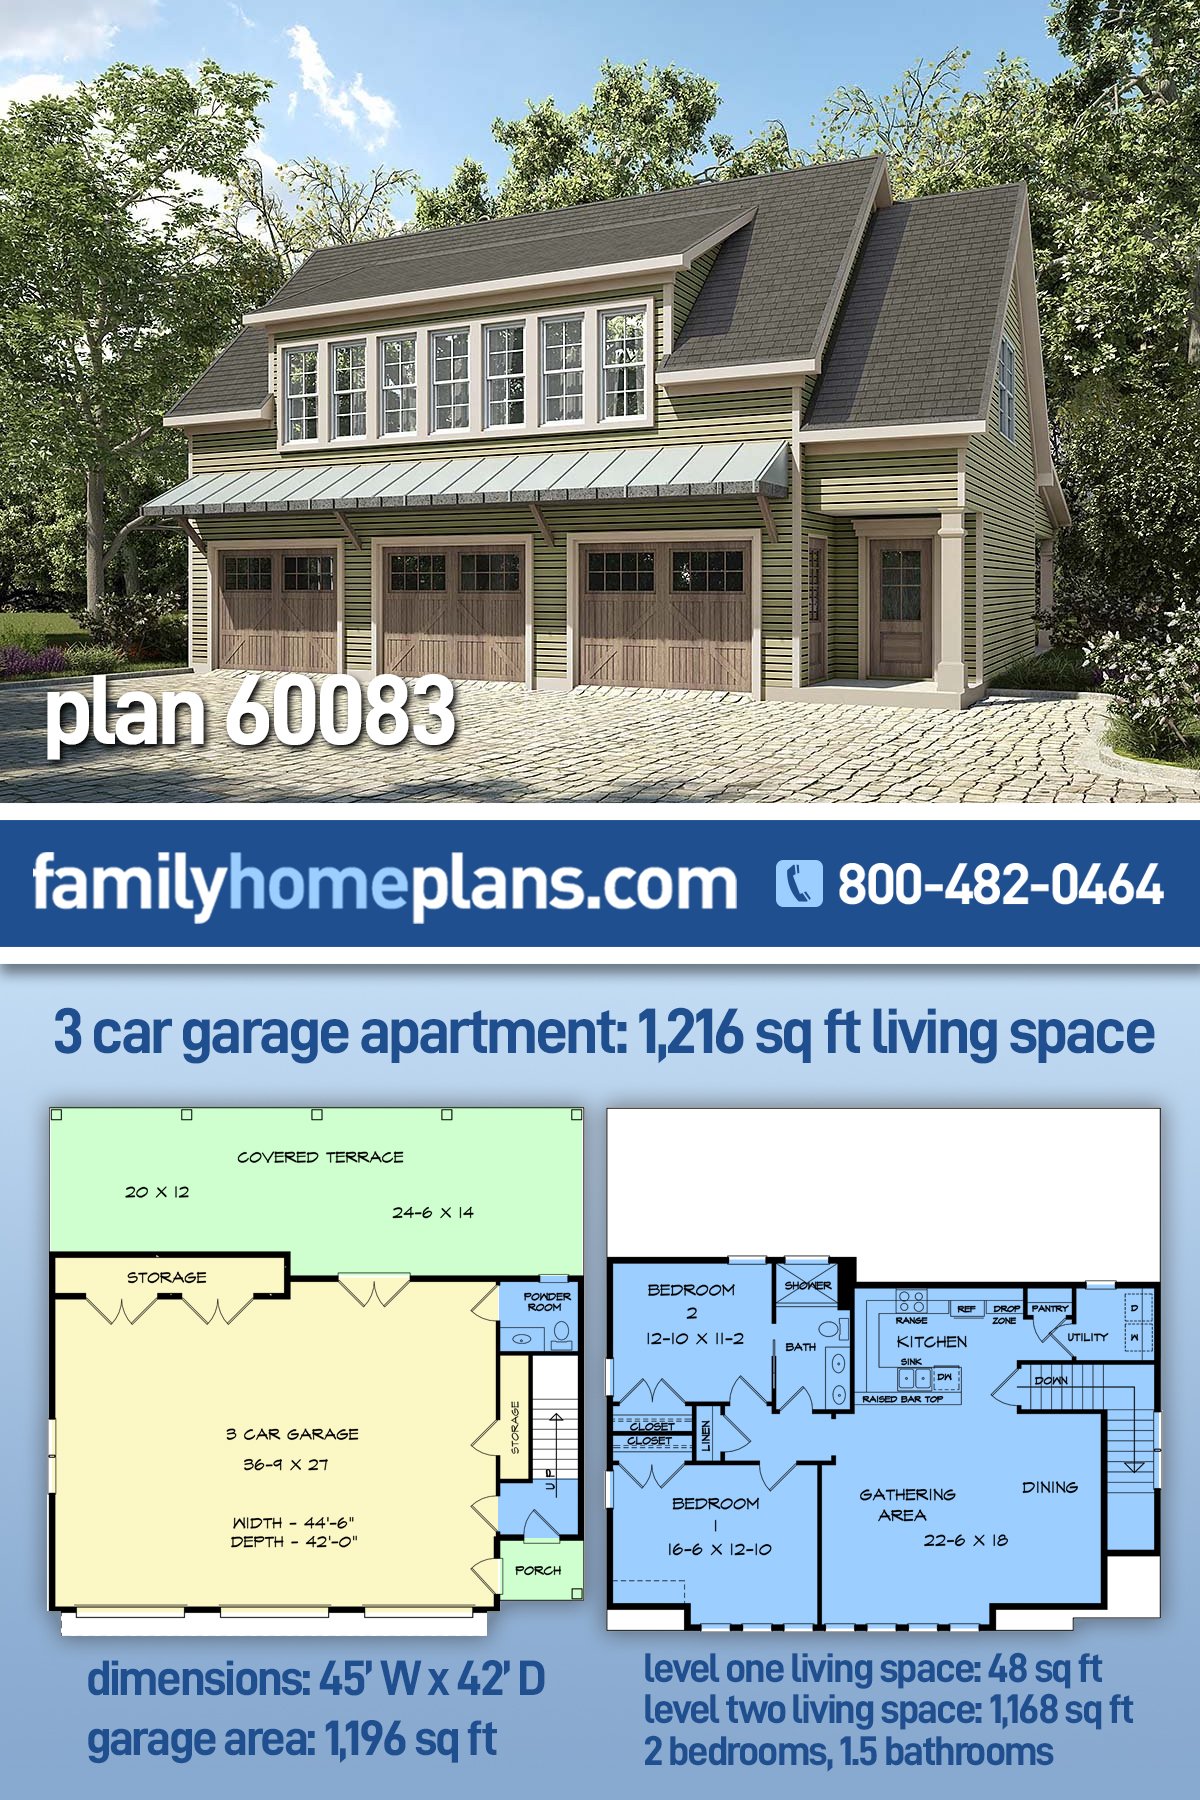 Garage Plan 60083 - 3 Car Garage Apartment